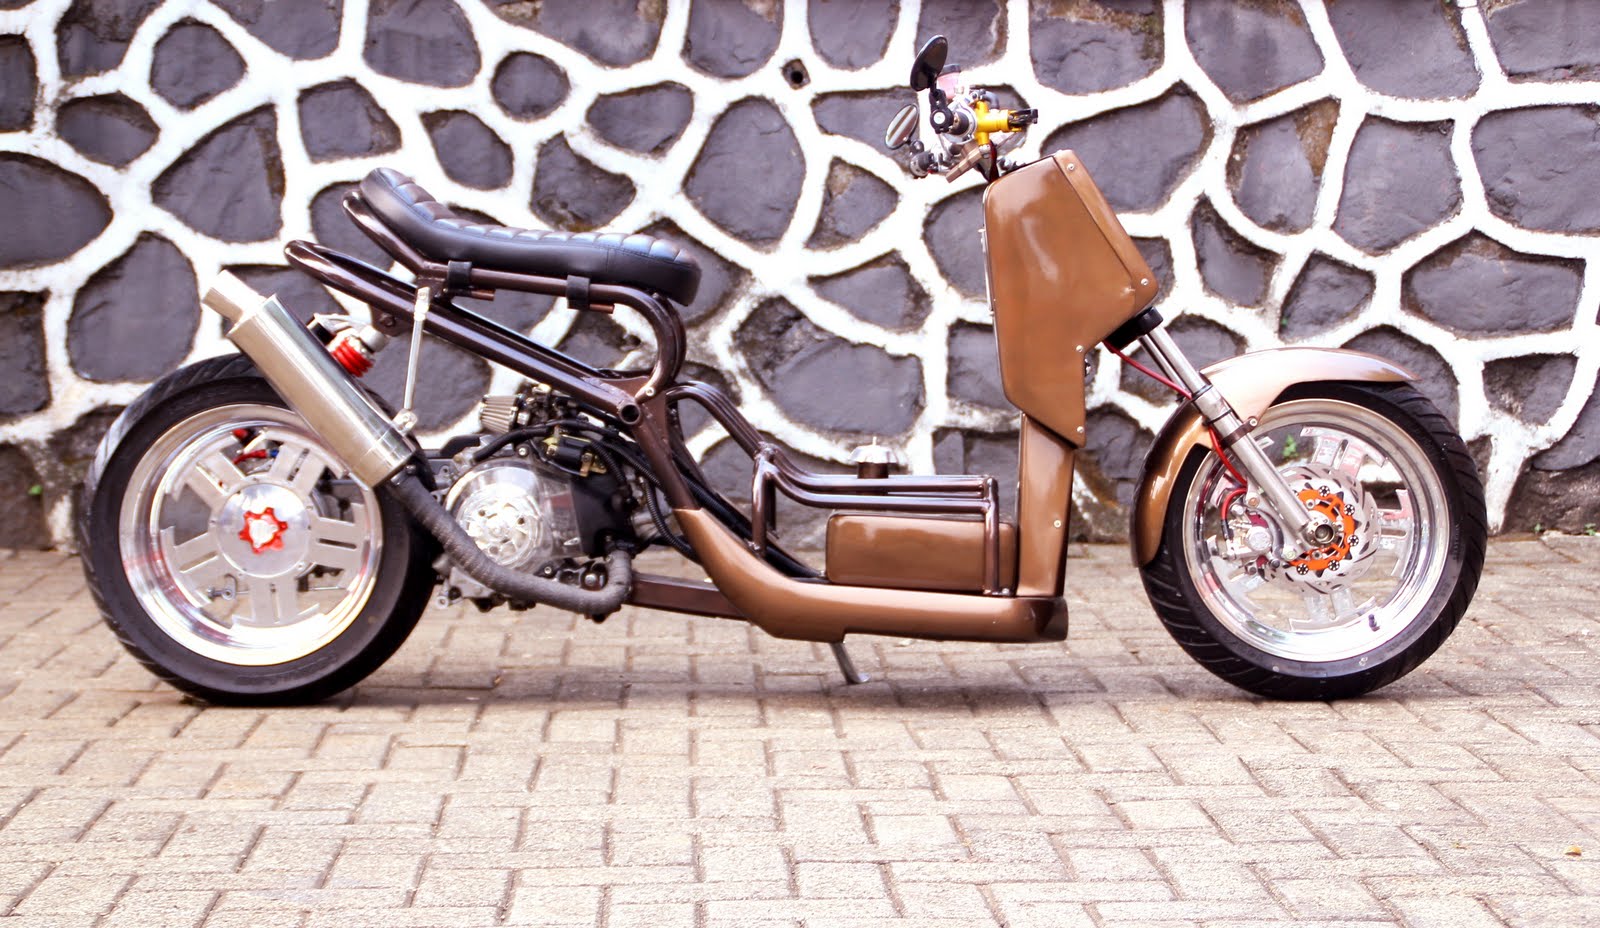 88 Modifikasi Motor Mio Jadi Harley Terbaru Kujang Motor